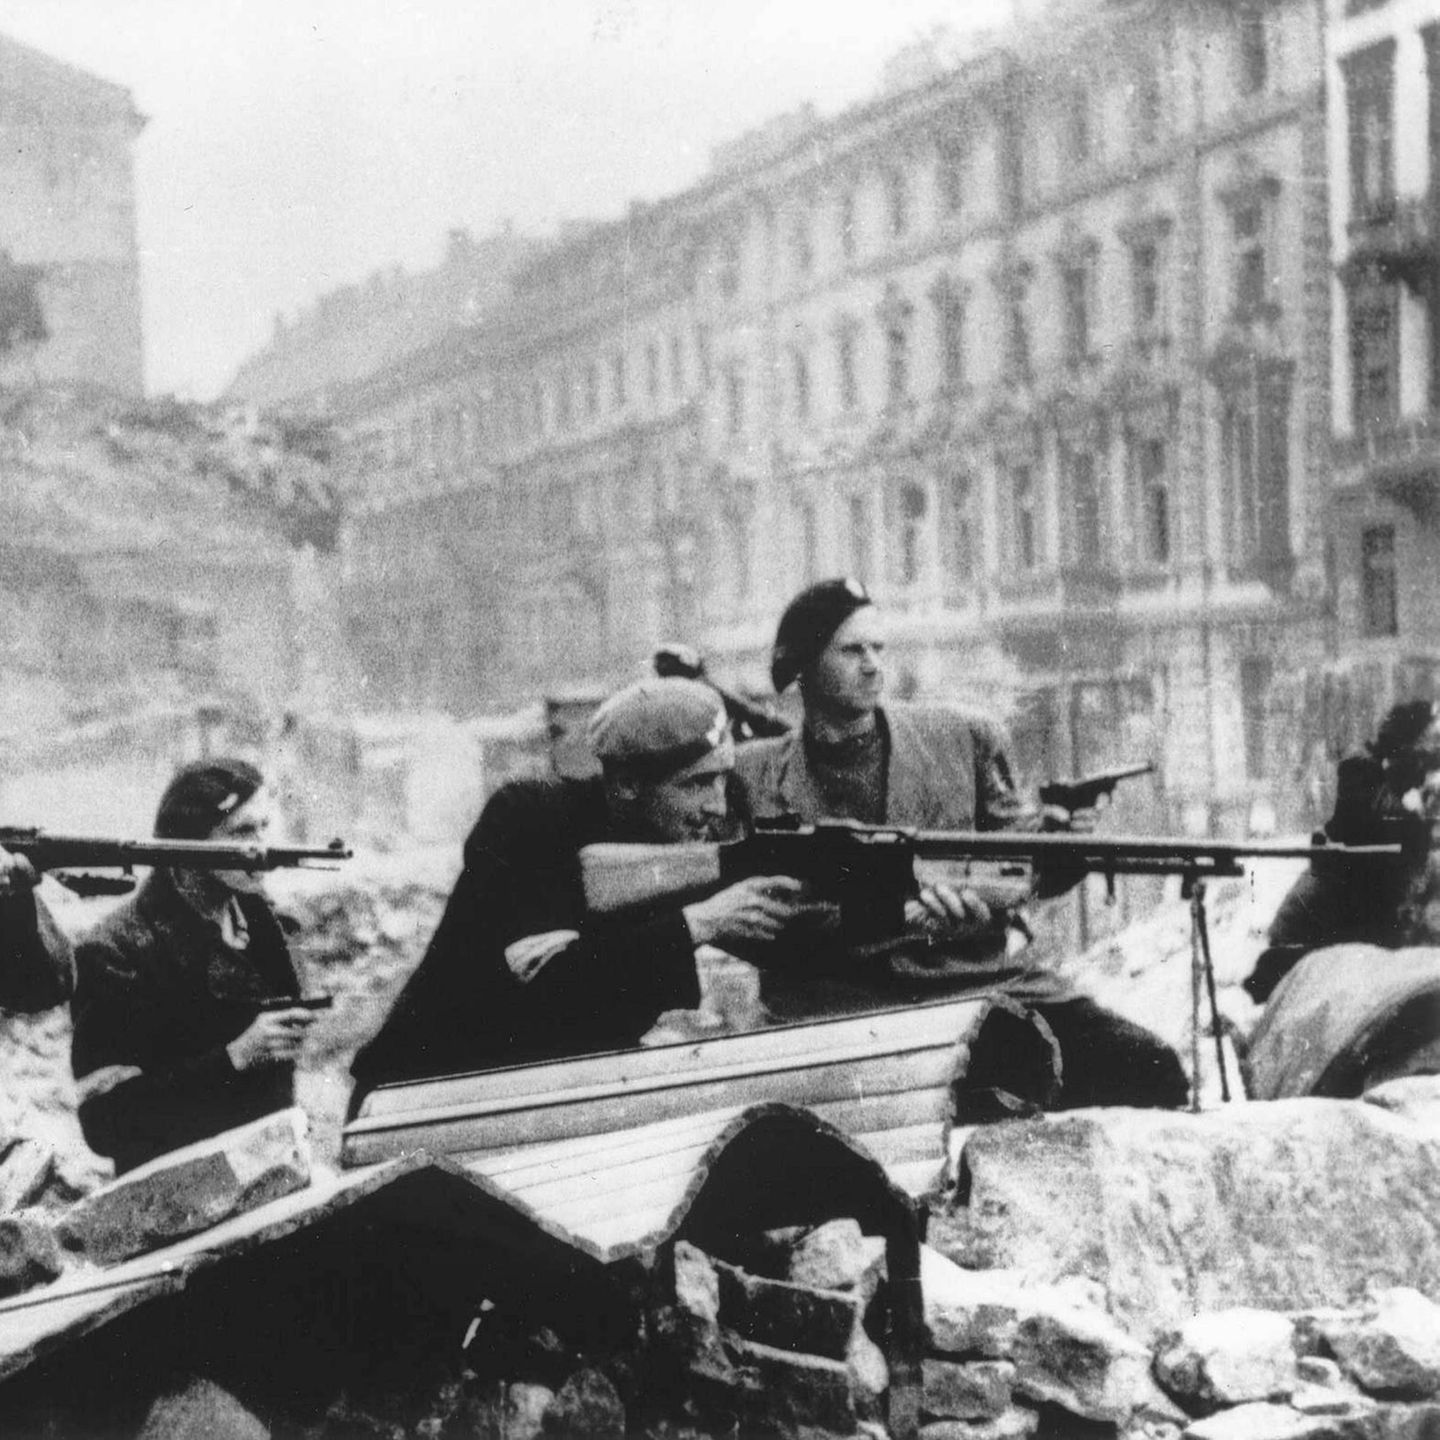 Polnische Soldaten in Warschau 1944 liegen mit ihren Gewehren im Anschlag hinter Trümmern